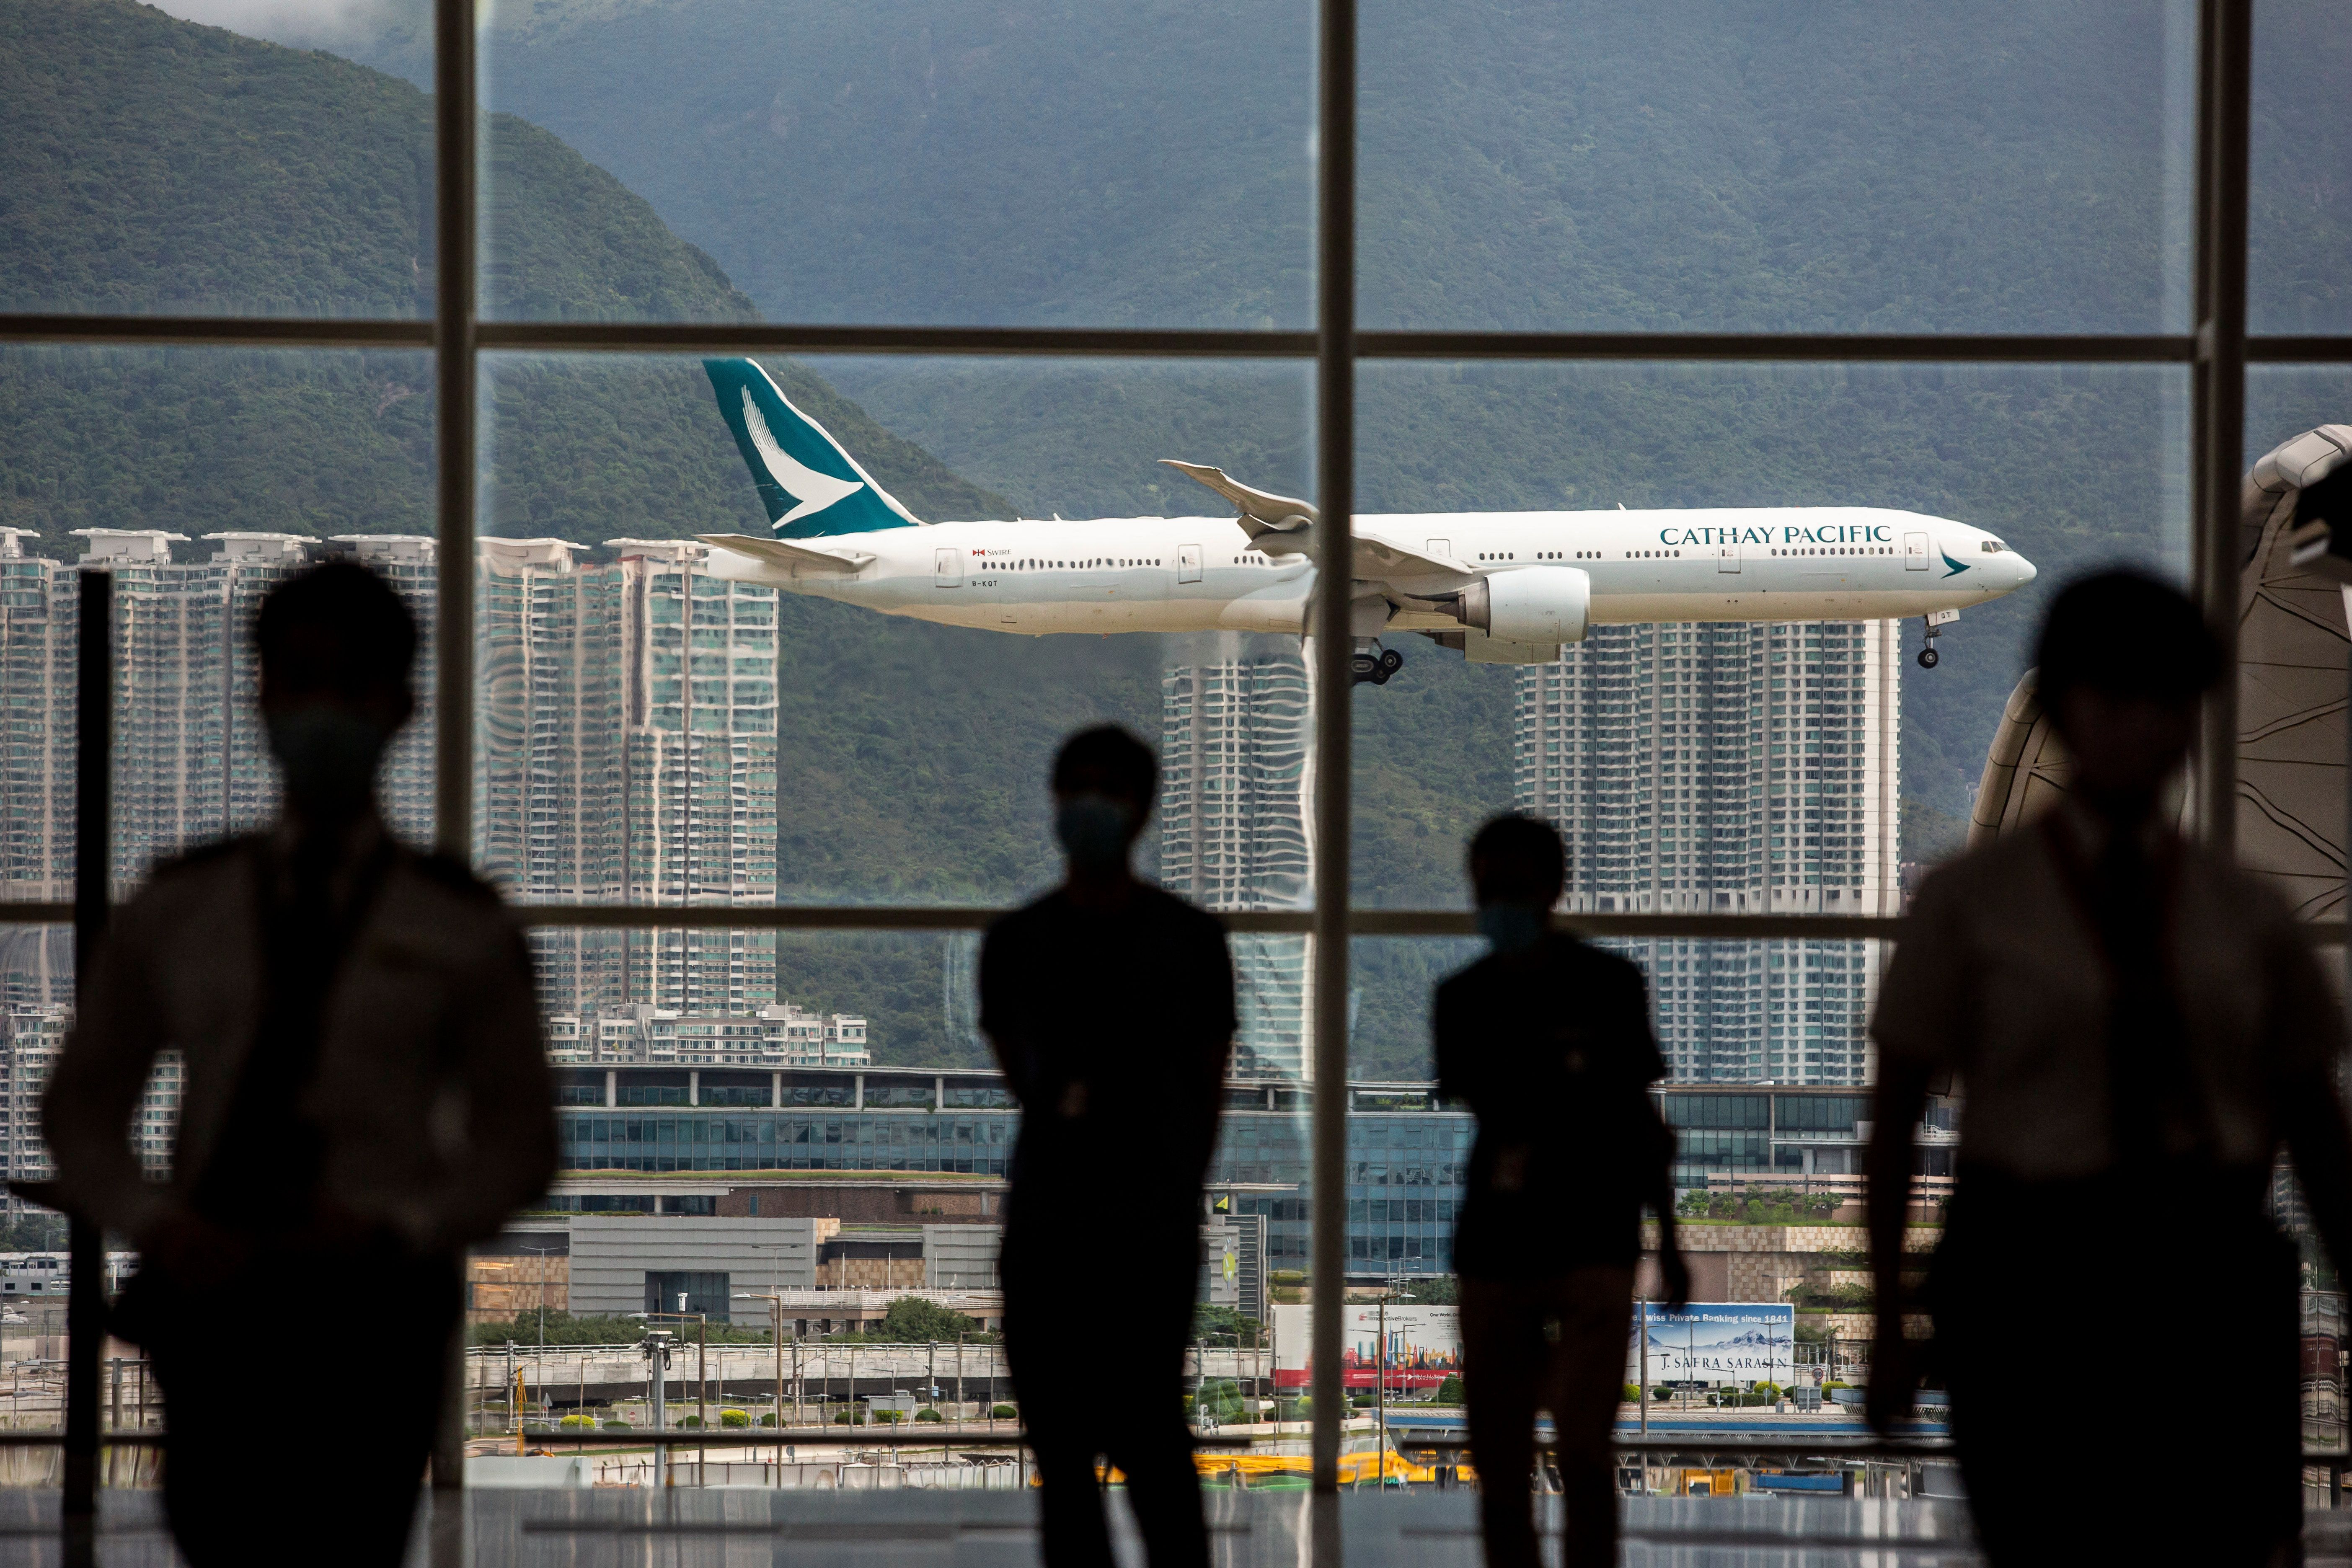 A Cathay Pacific aircraft comes in to land at Hong Kong International Airport